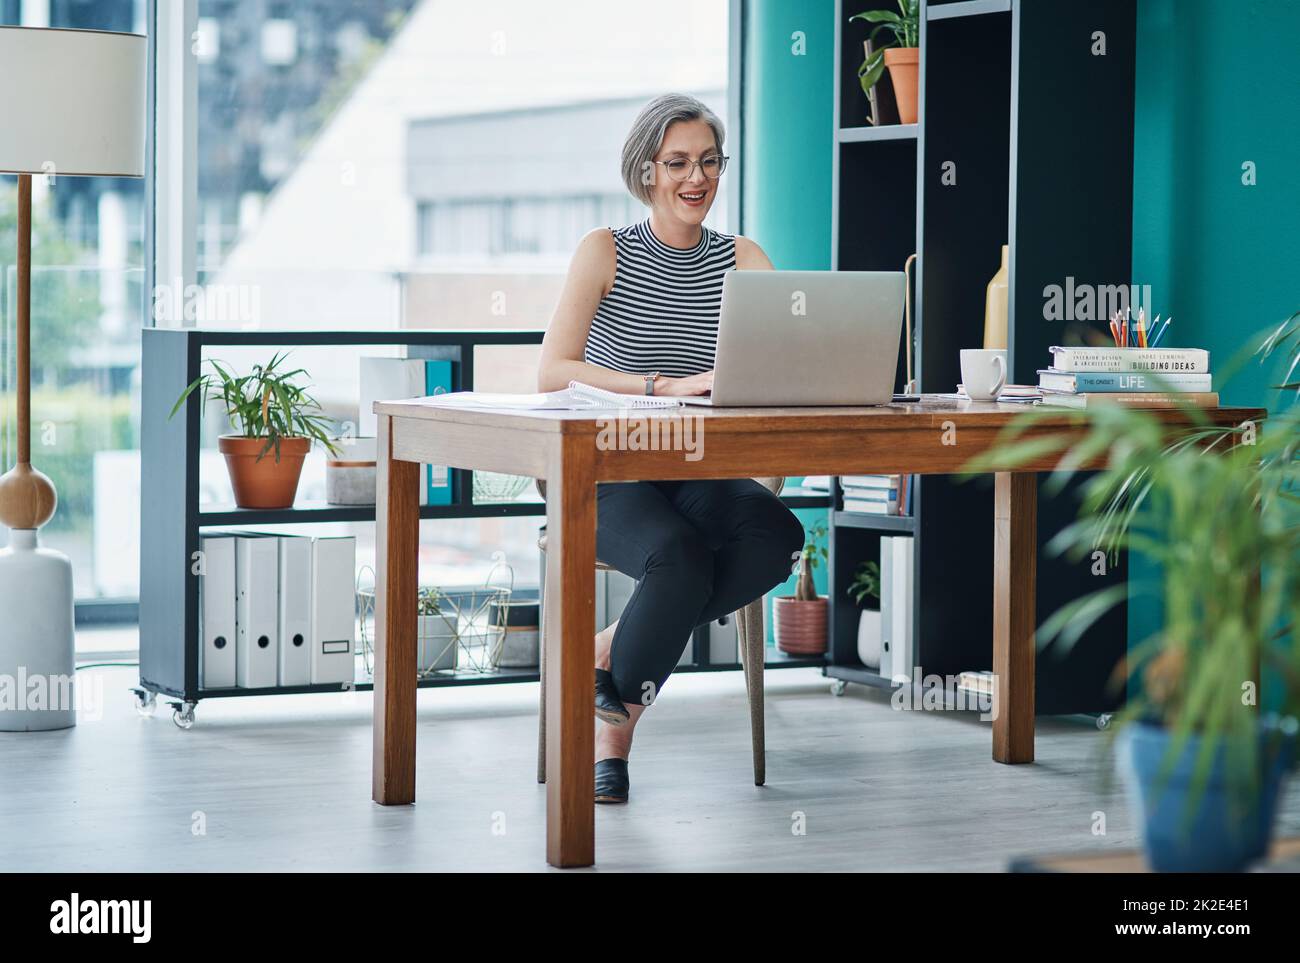 Nutzen Sie Online-Tools, um Ihre Effizienz und Produktivität zu steigern.  Aufnahme einer reifen Geschäftsfrau, die ihren Laptop benutzt, während sie  an ihrem Schreibtisch sitzt Stockfotografie - Alamy